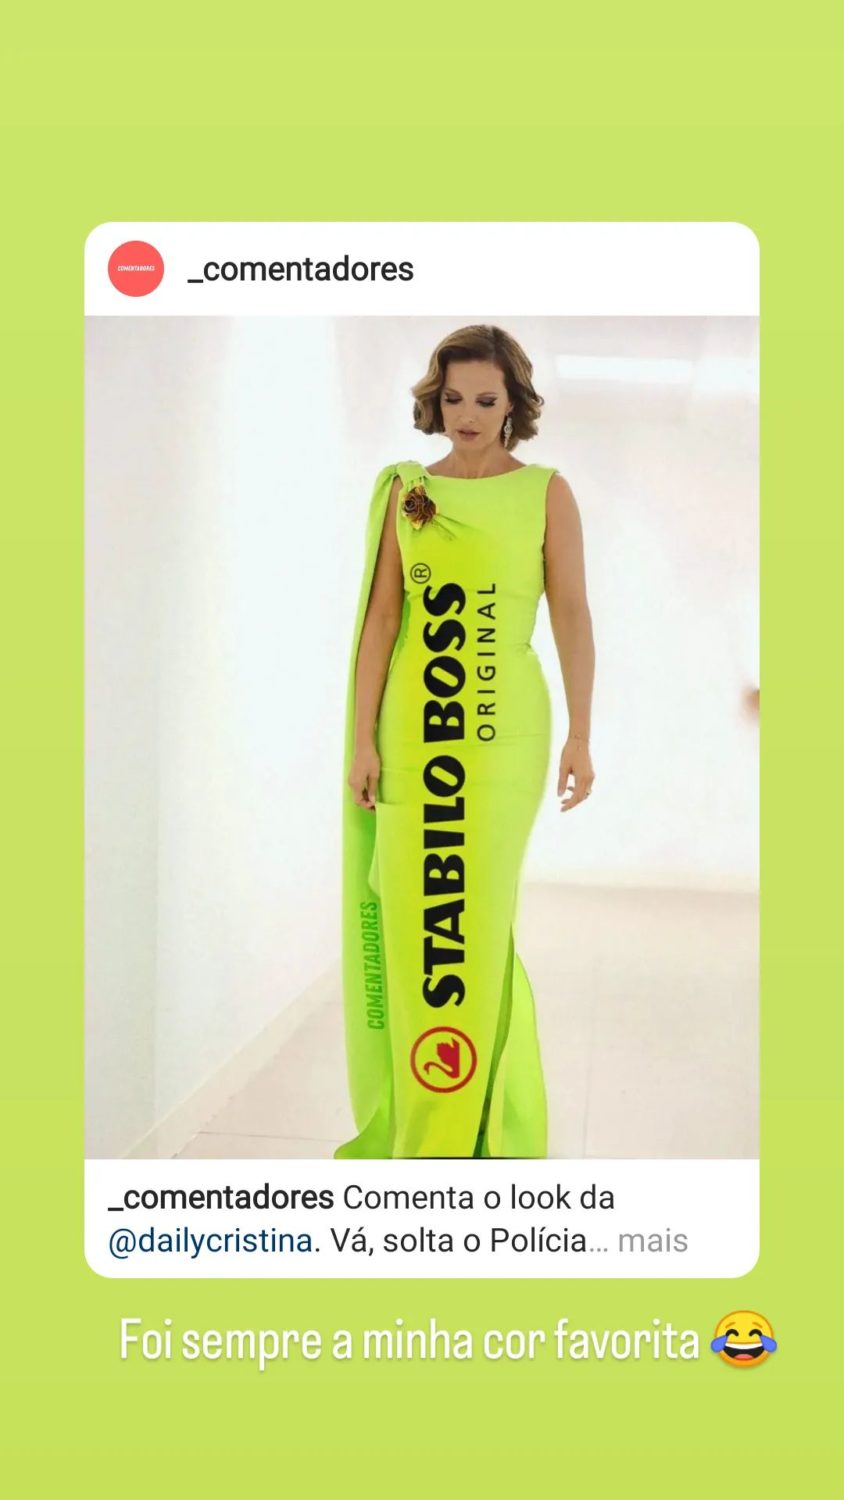 Cristina Ferreira dá &#8220;resposta&#8221; às piadas sobre o vestido &#8220;fluorescente&#8221;: &#8220;Gosto mais de morango&#8230;&#8221;